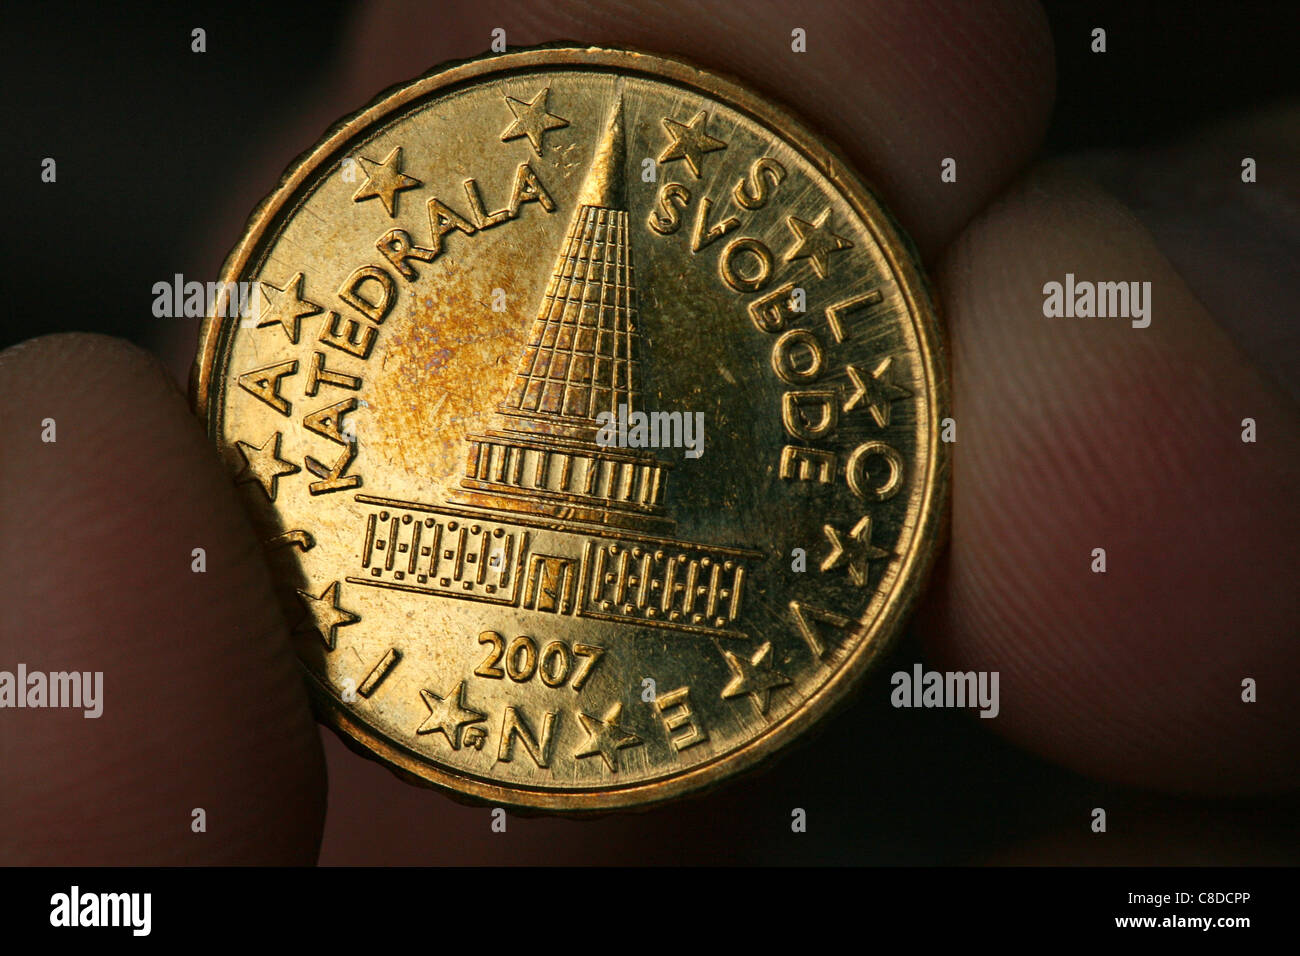 Diseño no realizado del Parlamento Nacional Esloveno por el arquitecto Joze Plecnik sobre la moneda eslovena de 10 céntimos de euro. Foto de stock